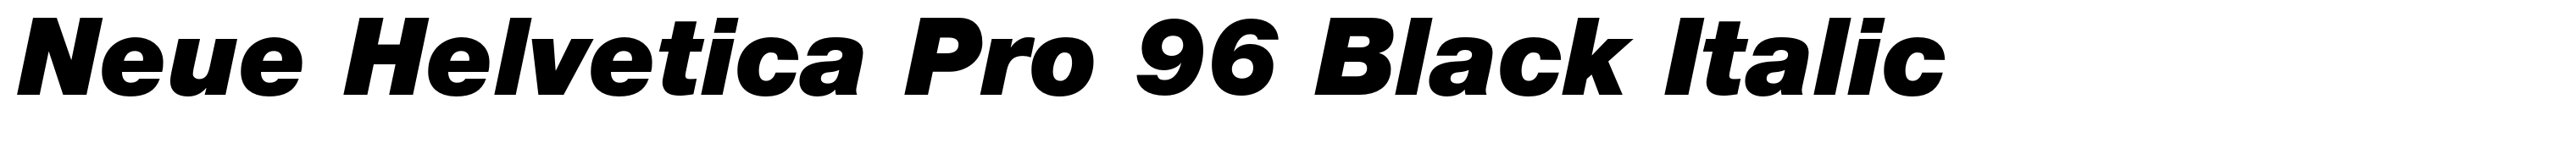 Neue Helvetica Pro 96 Black Italic